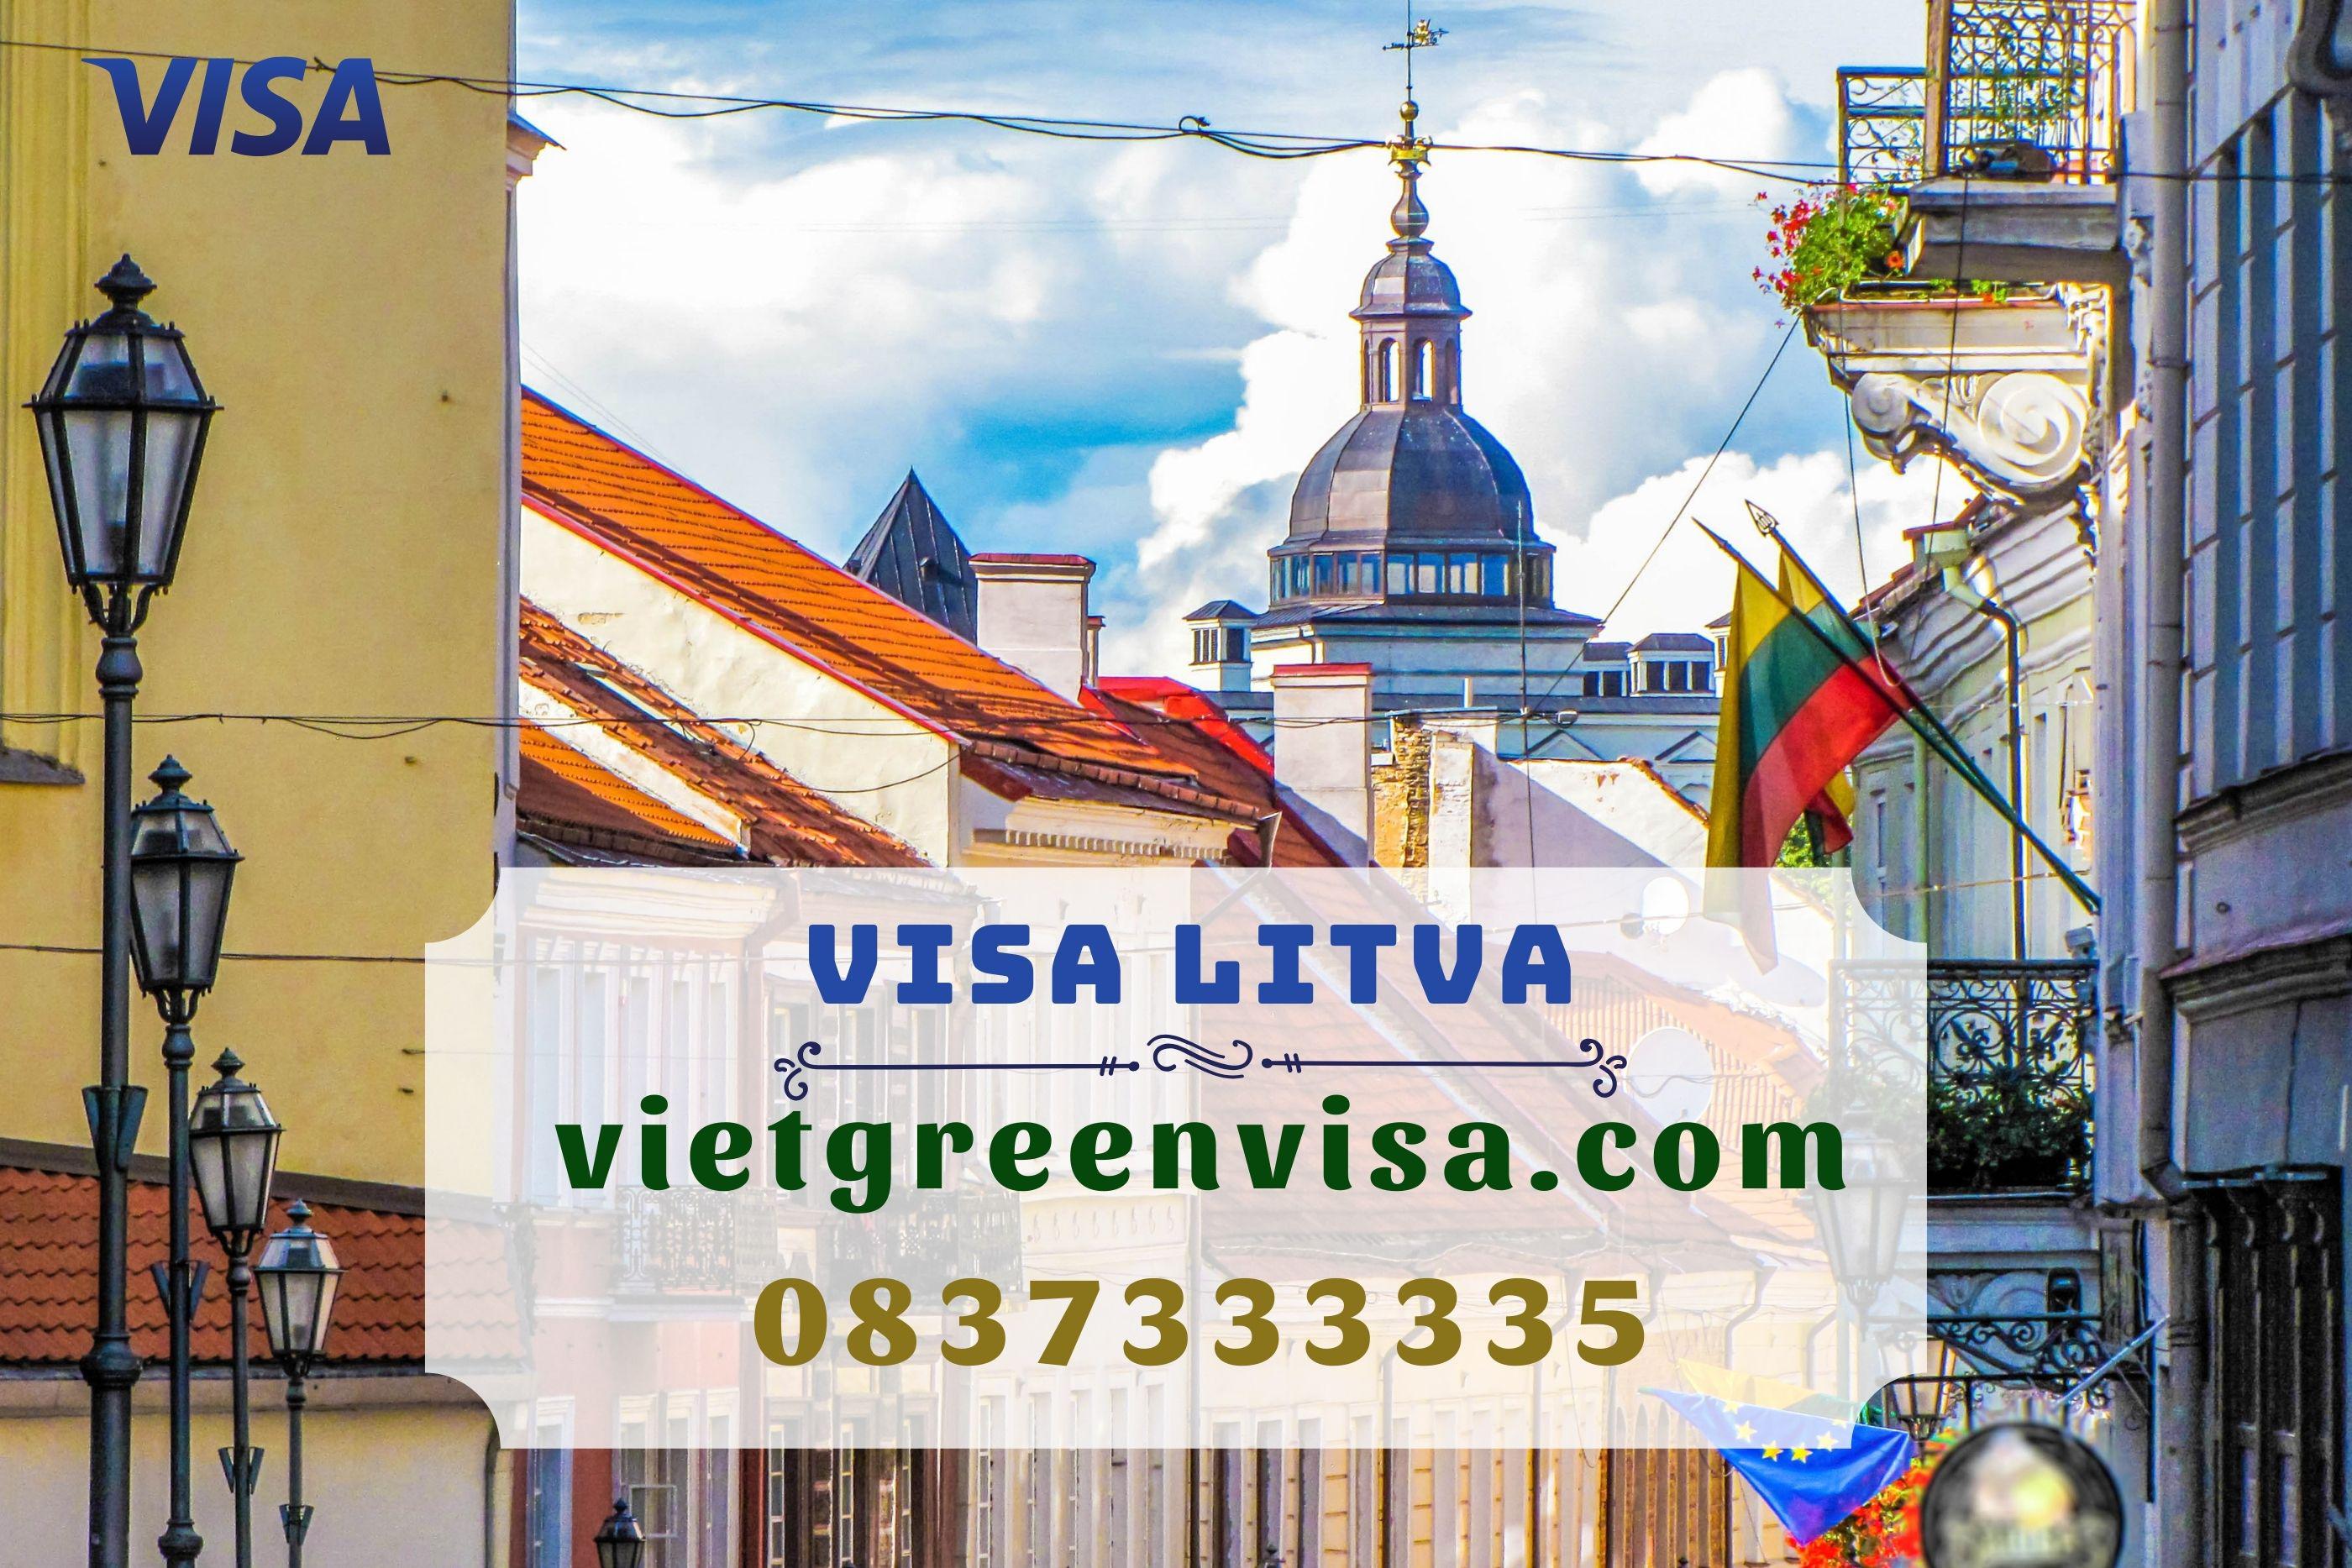 Bí kíp giúp bạn xin visa công tác Litva hiệu quả 